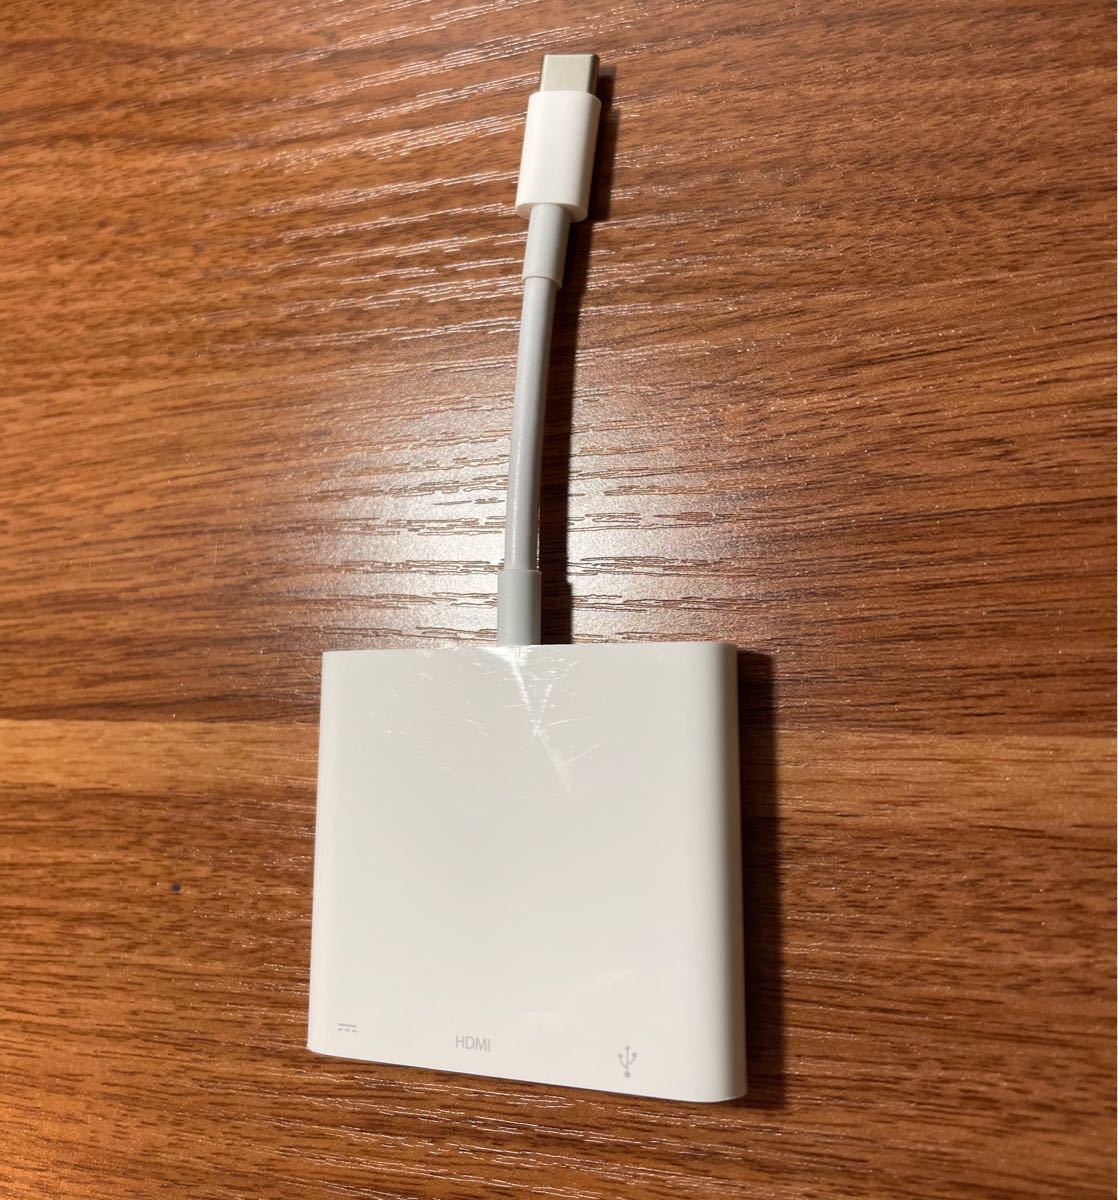 【数回使用】Apple 純正 USB-C Digital AV Multiport Adapter HDMI USB 変換ケーブル